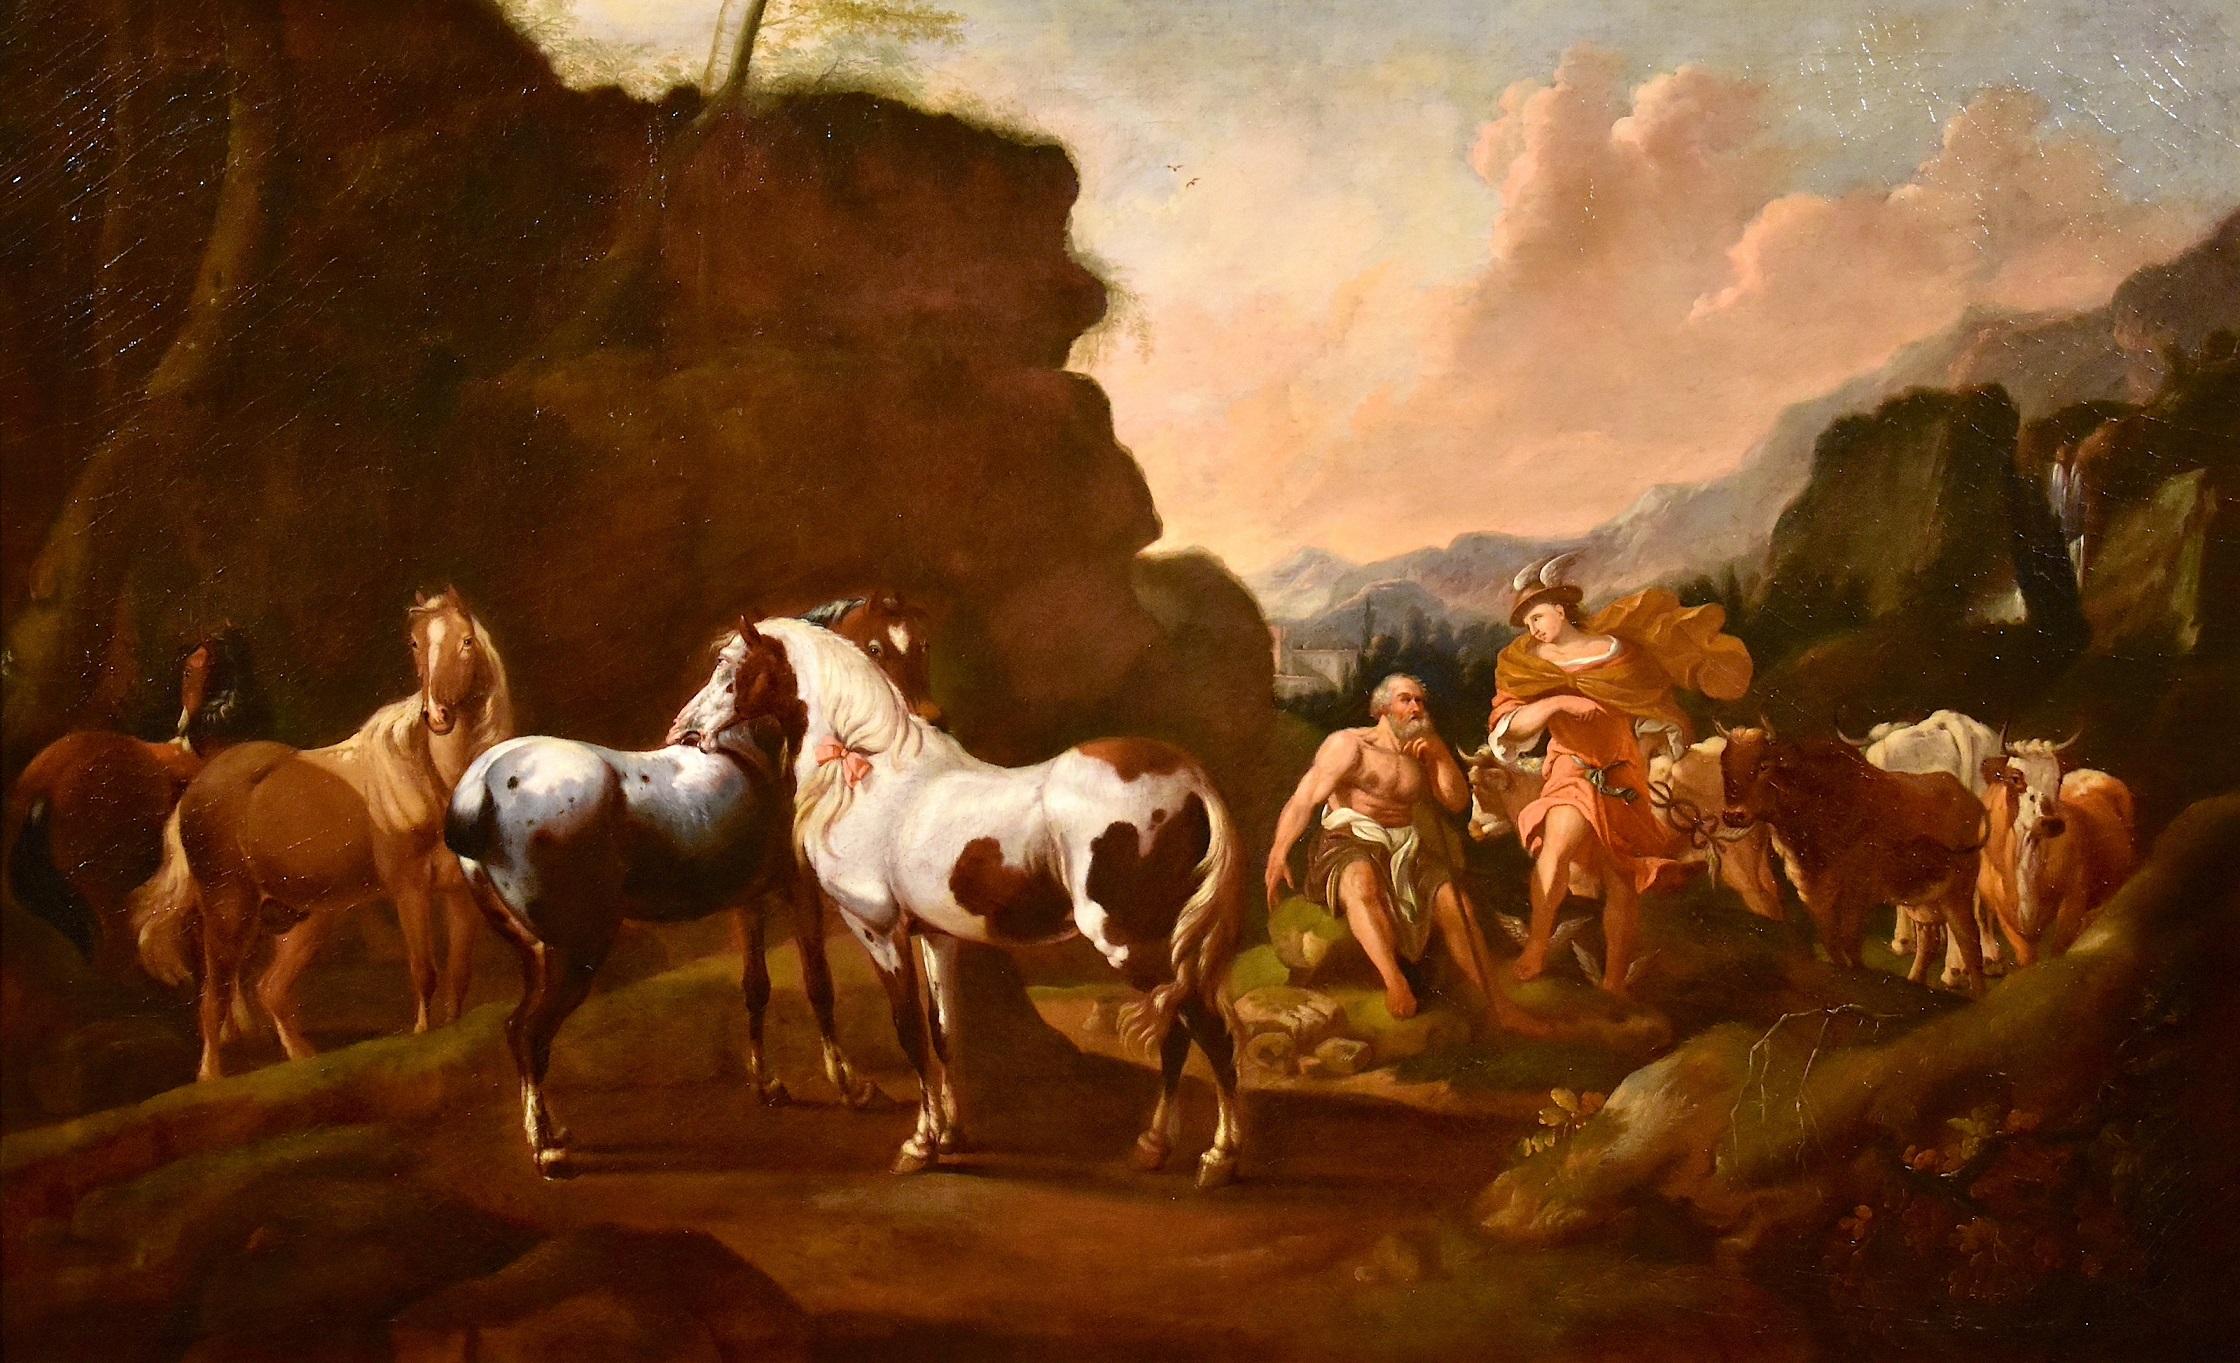 Peinture de cheval mercuré Roos Landscape Mythe Huile sur toile Grand maître 17ème siècle - Painting de Johann Heinrich Roos (Otterberg 1631 - Frankfurt 1685)